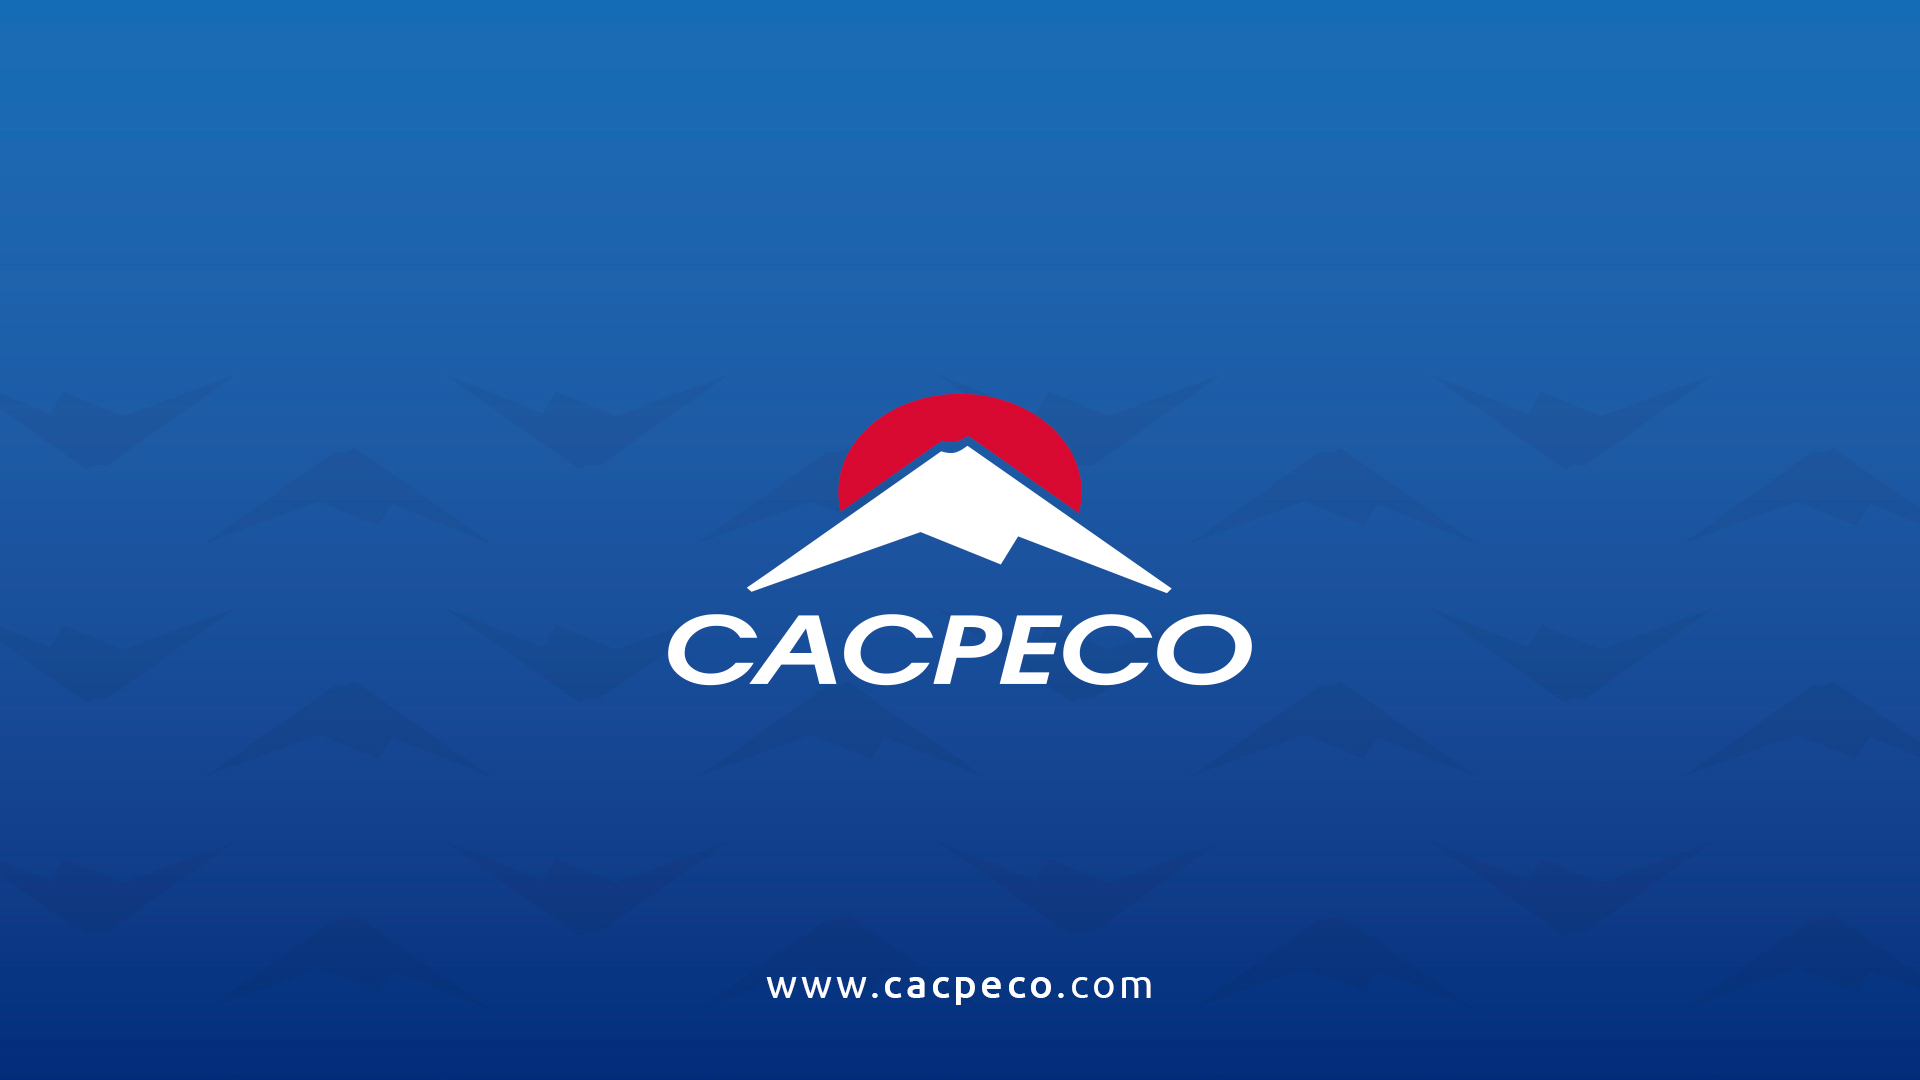 (c) Cacpeco.com